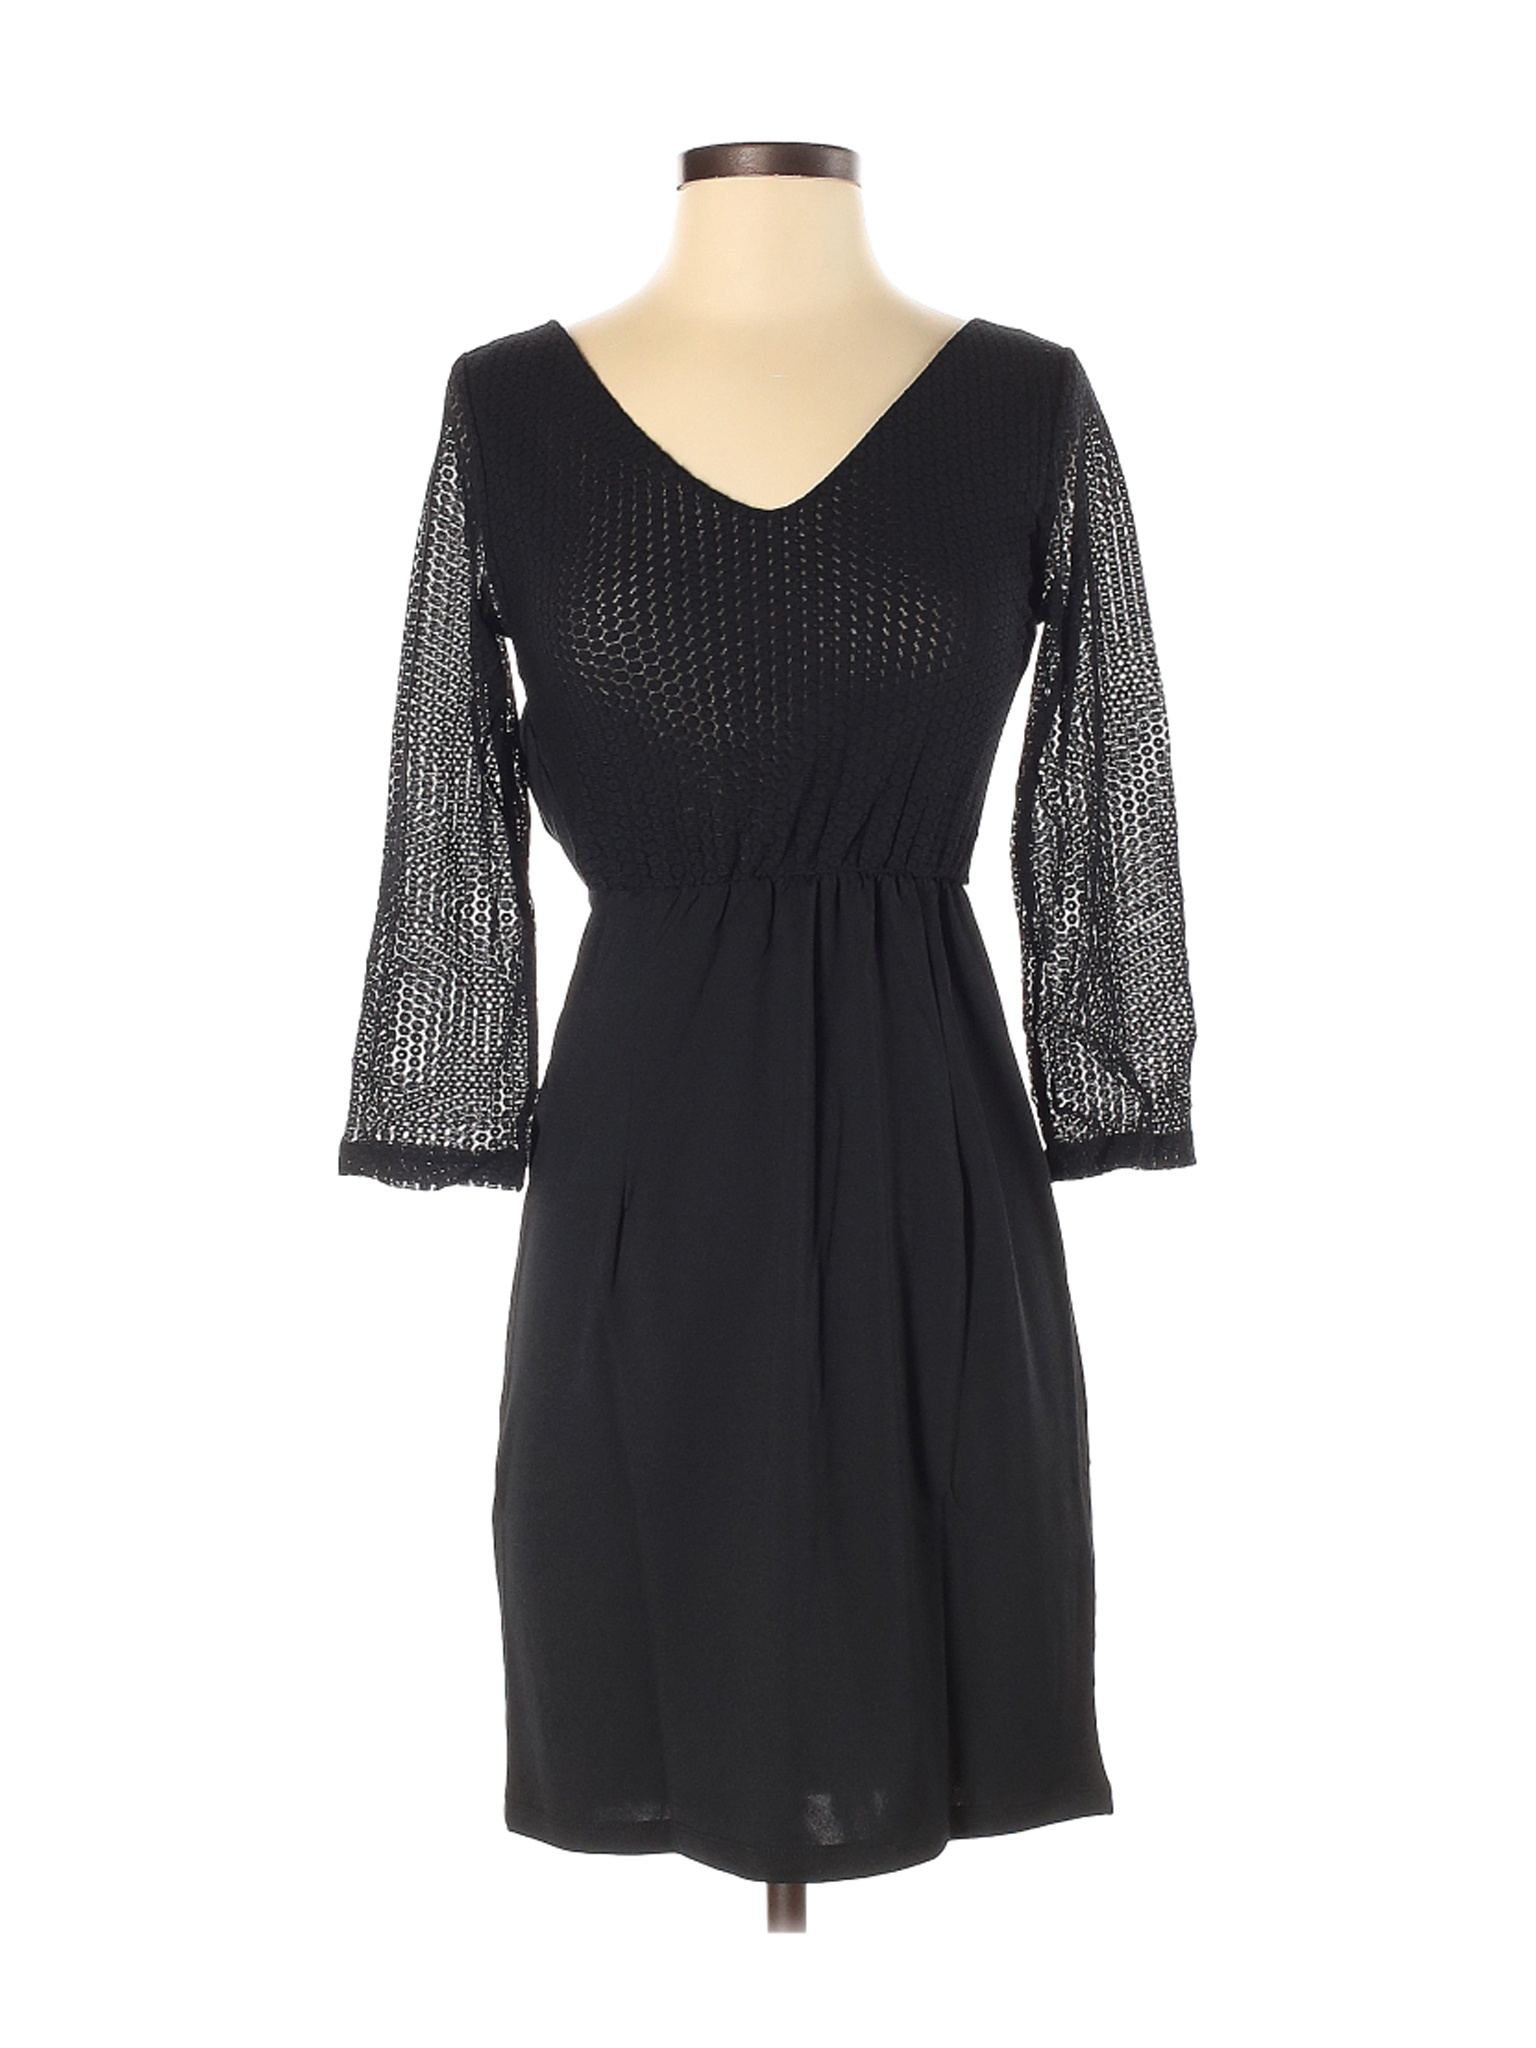 NWT TRACY NEGOSHIAN Women Black Cocktail Dress XS | eBay